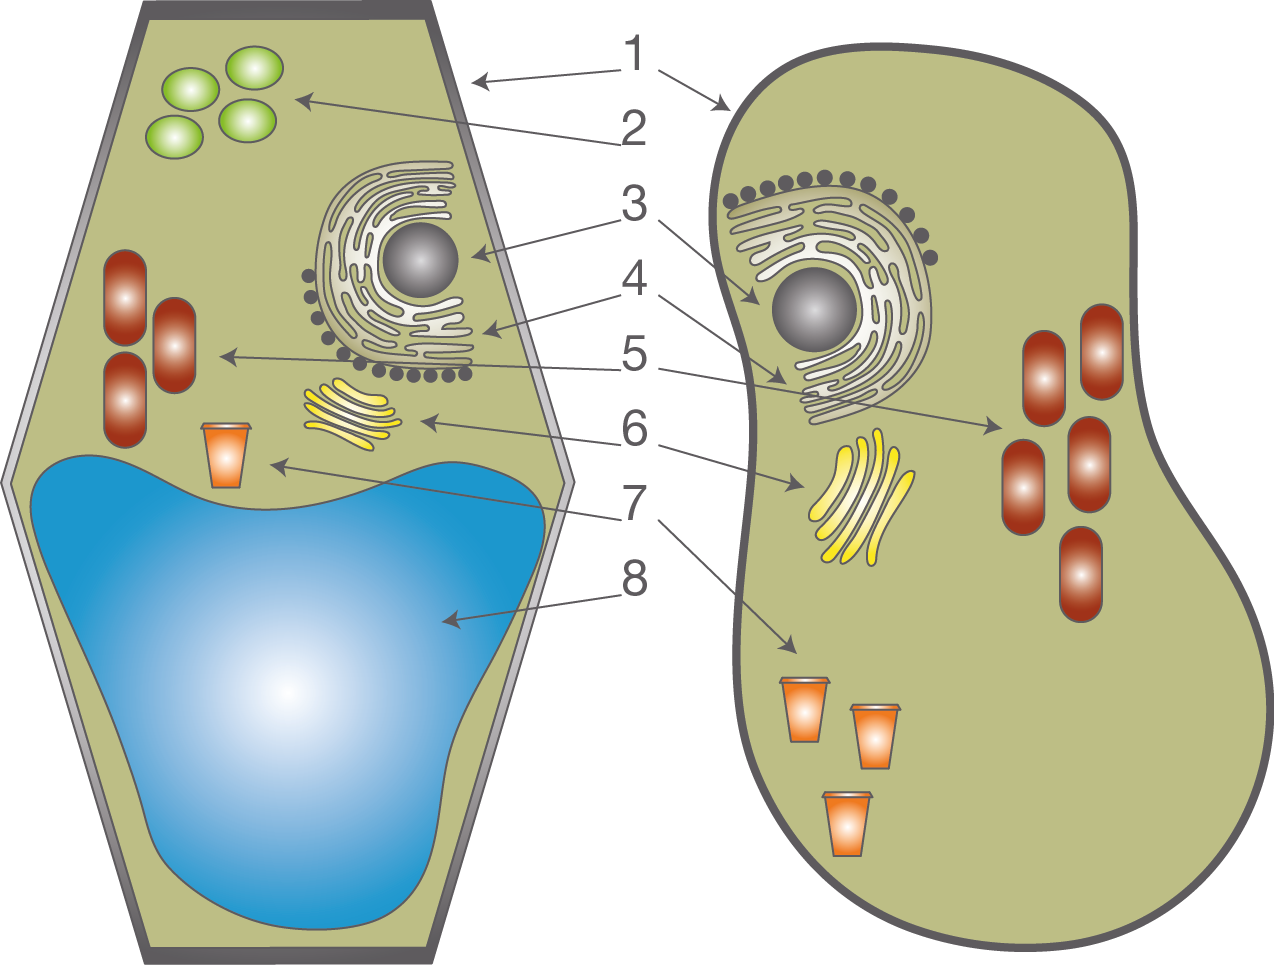  Vergleich  Tierzelle  Pflanzenzelle  Die Zelle Bio 